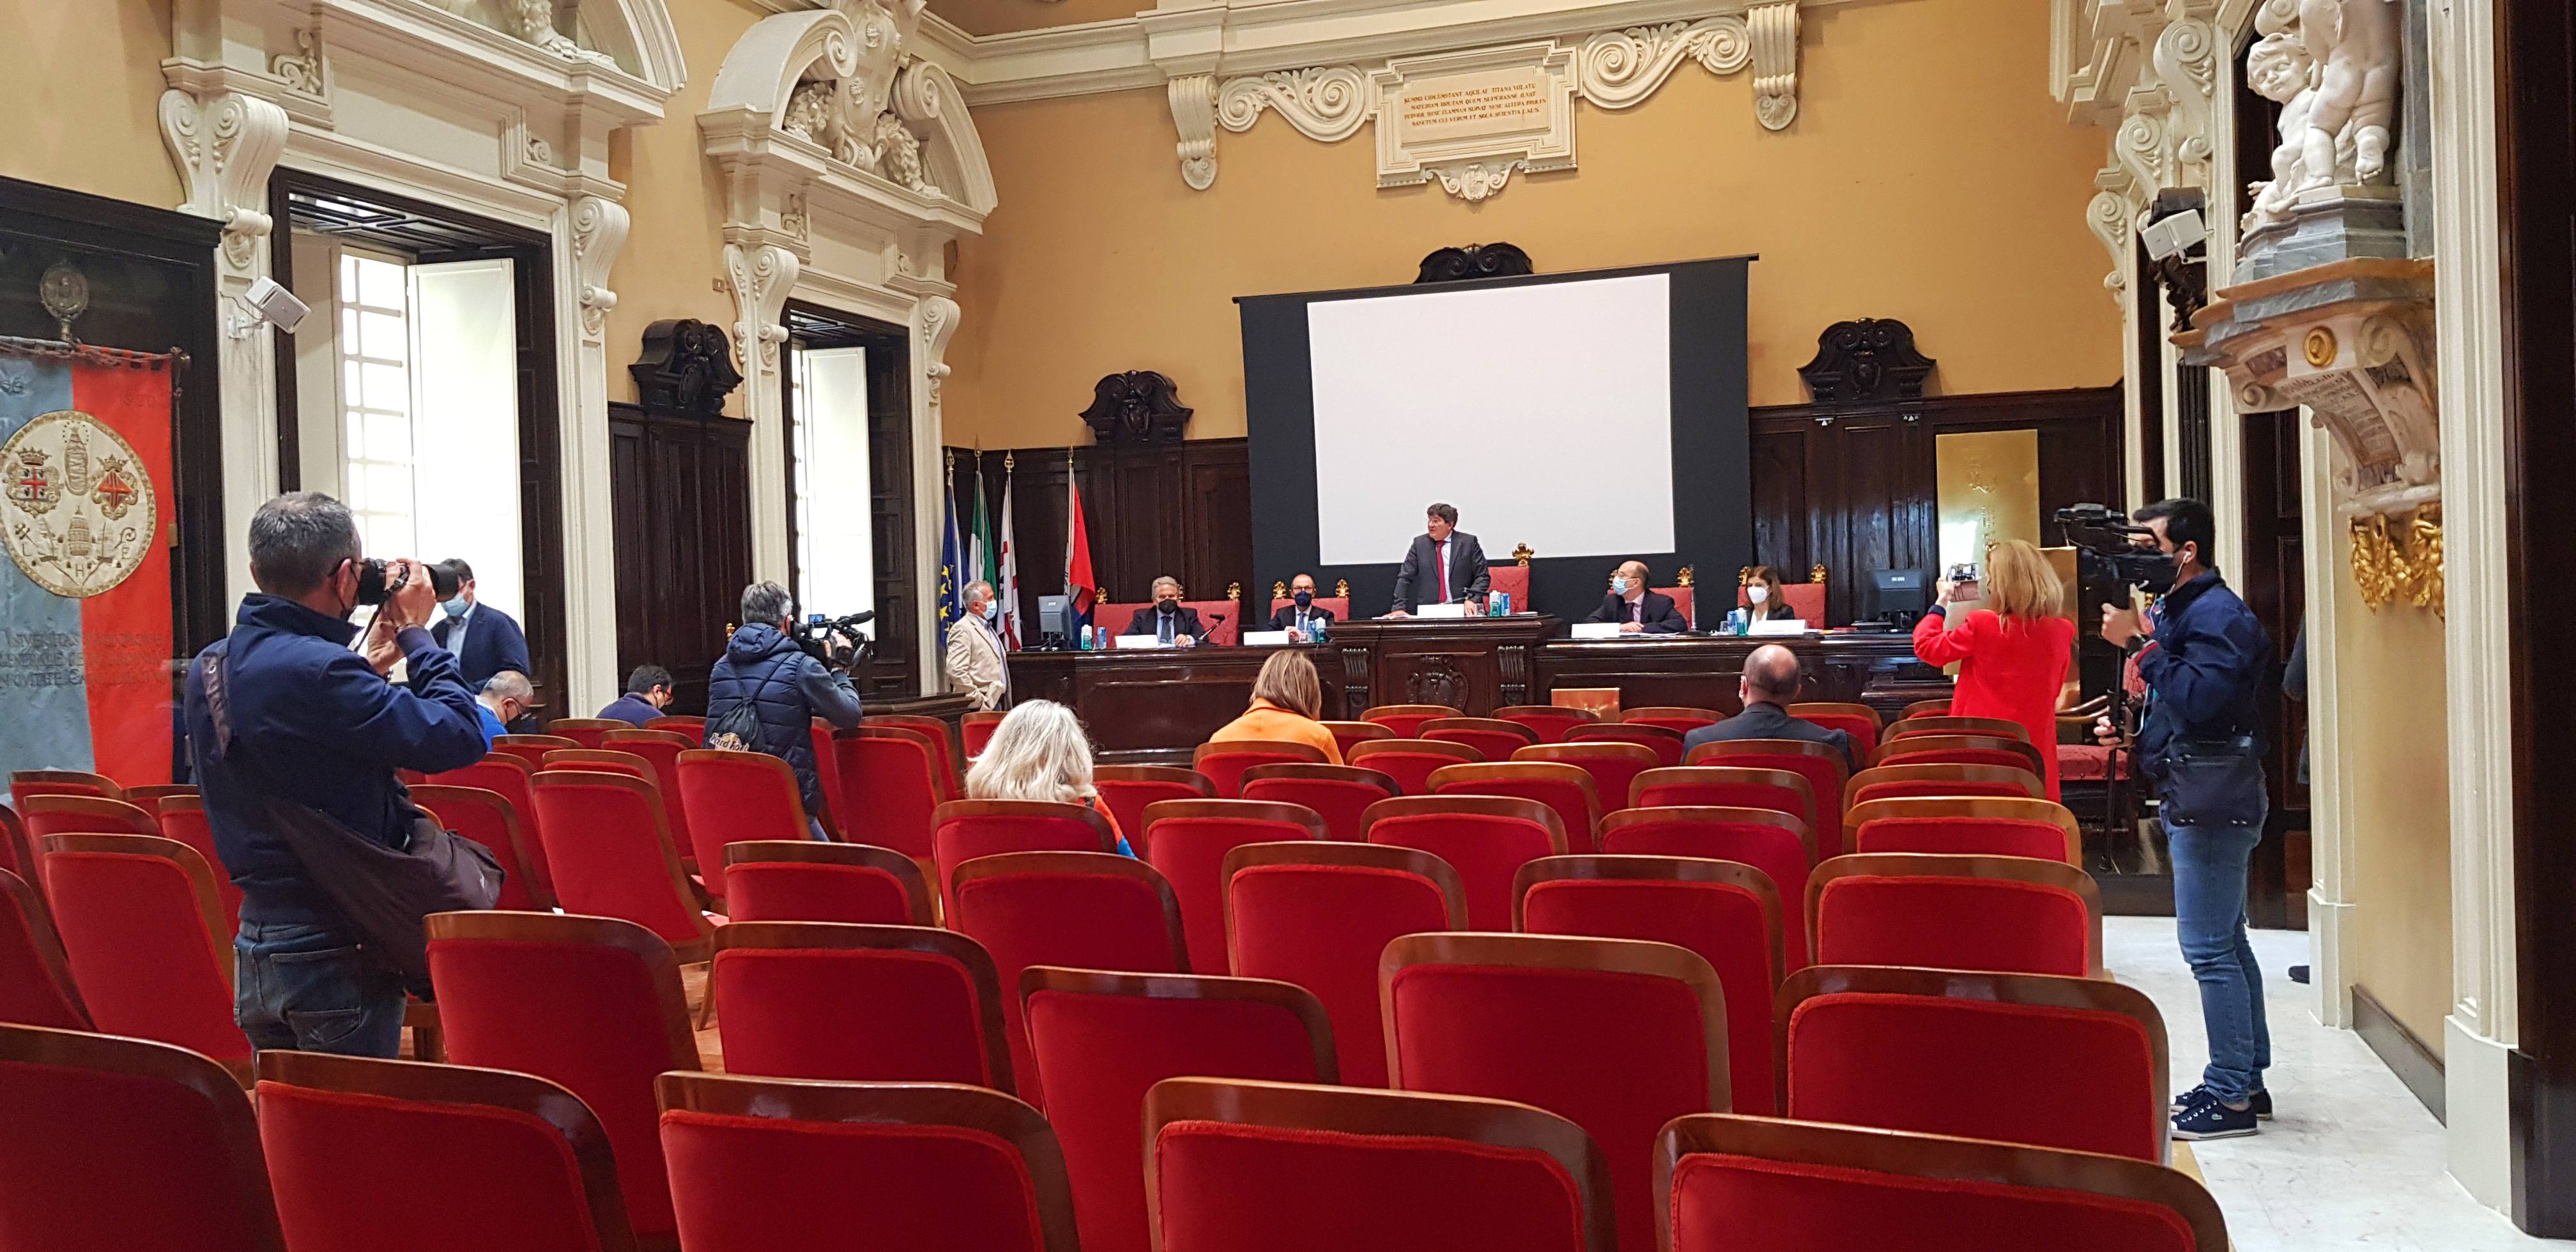 La conferenza nell'aula magna del palazzo Belgrano